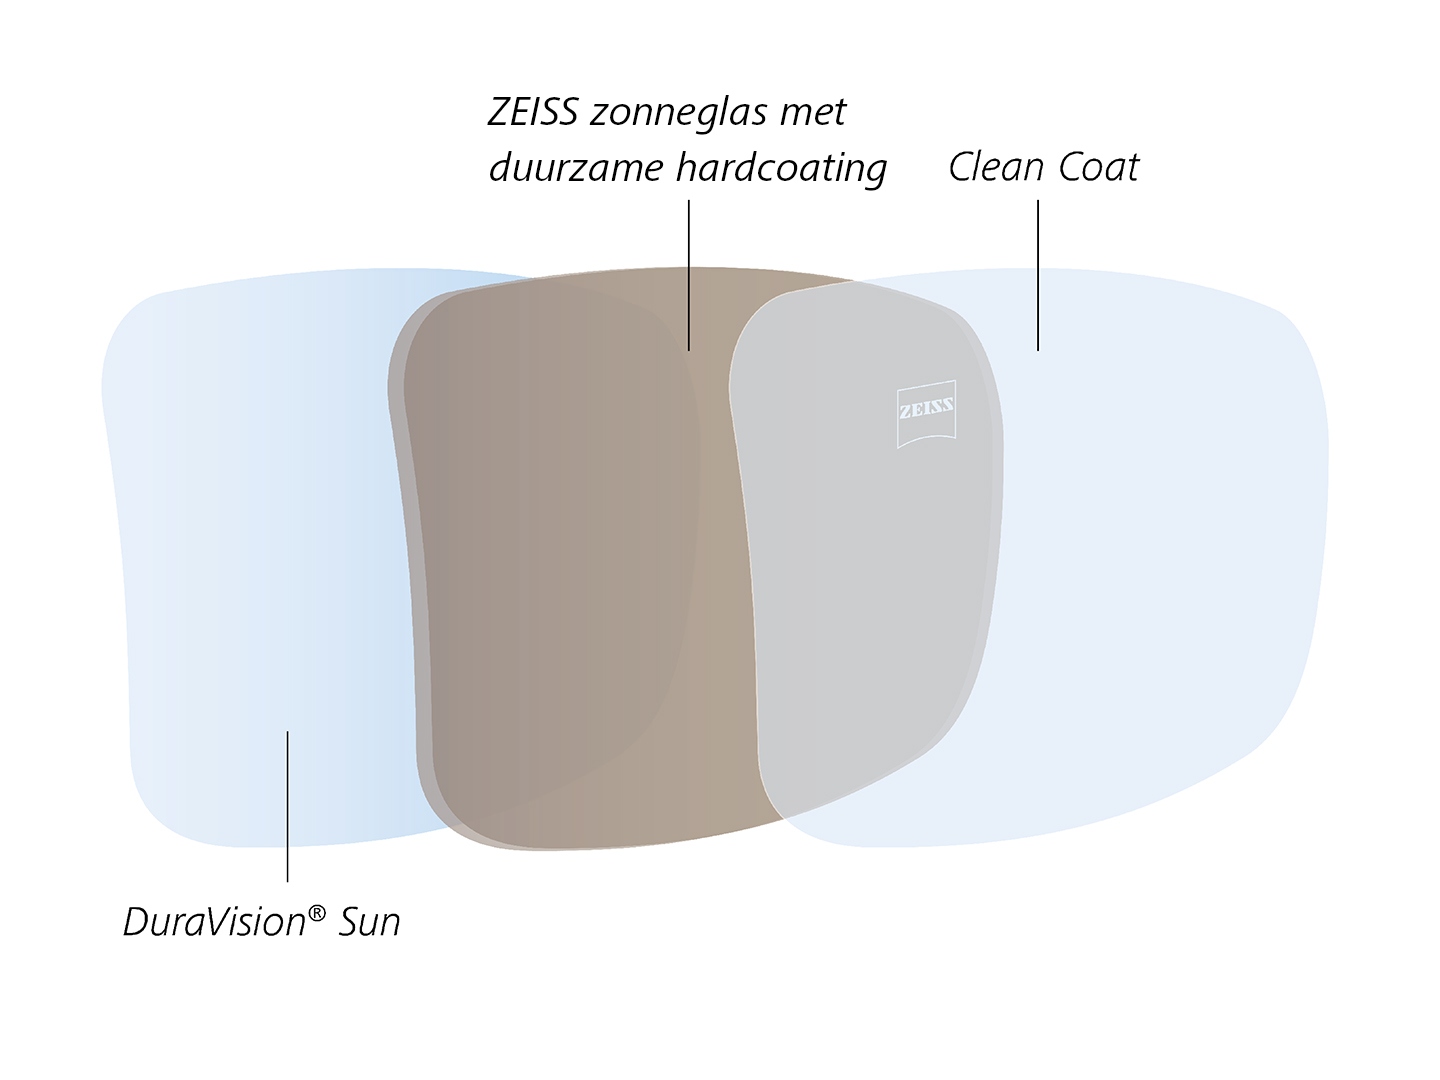 Illustratie van antireflectiecoating aan de achterzijde met water- en olieafstotende eigenschappen, speciaal ontworpen voor getinte brillenglazen. 